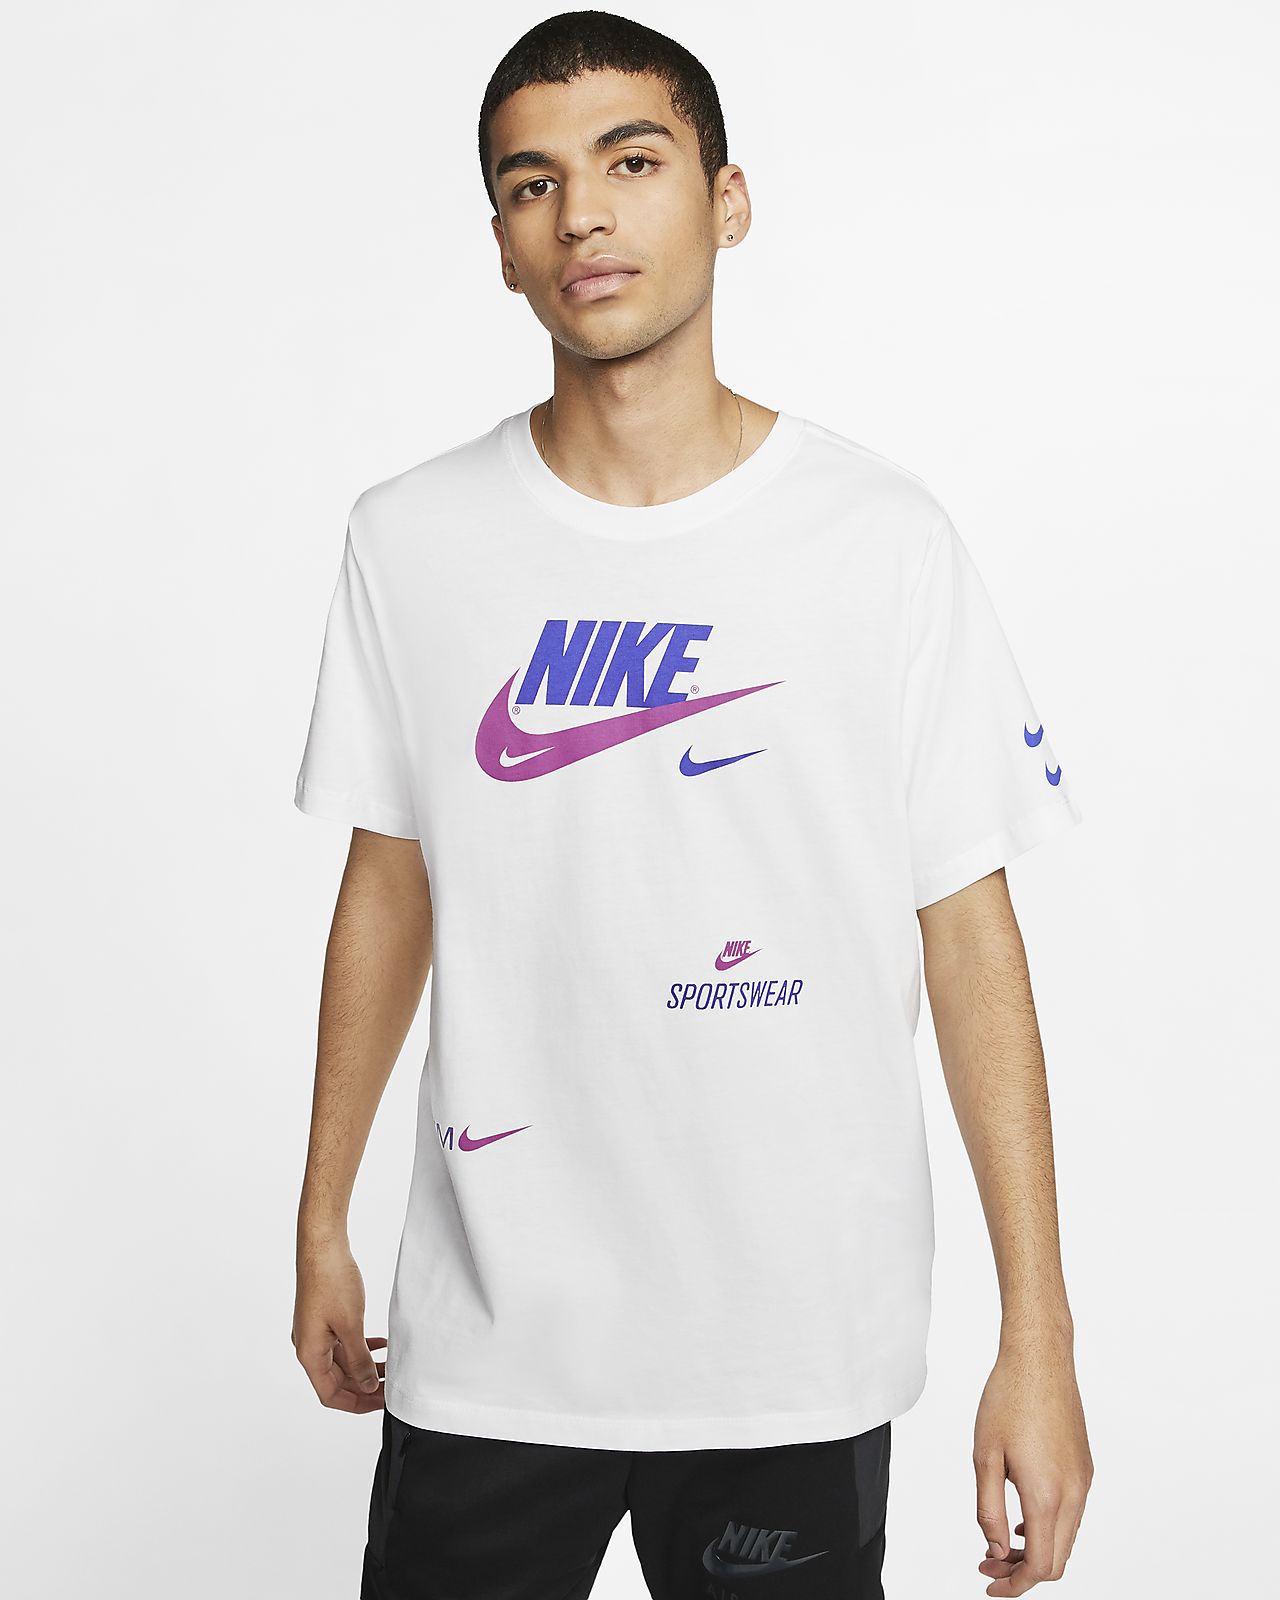 Nike Sportswear Men's T-Shirt 